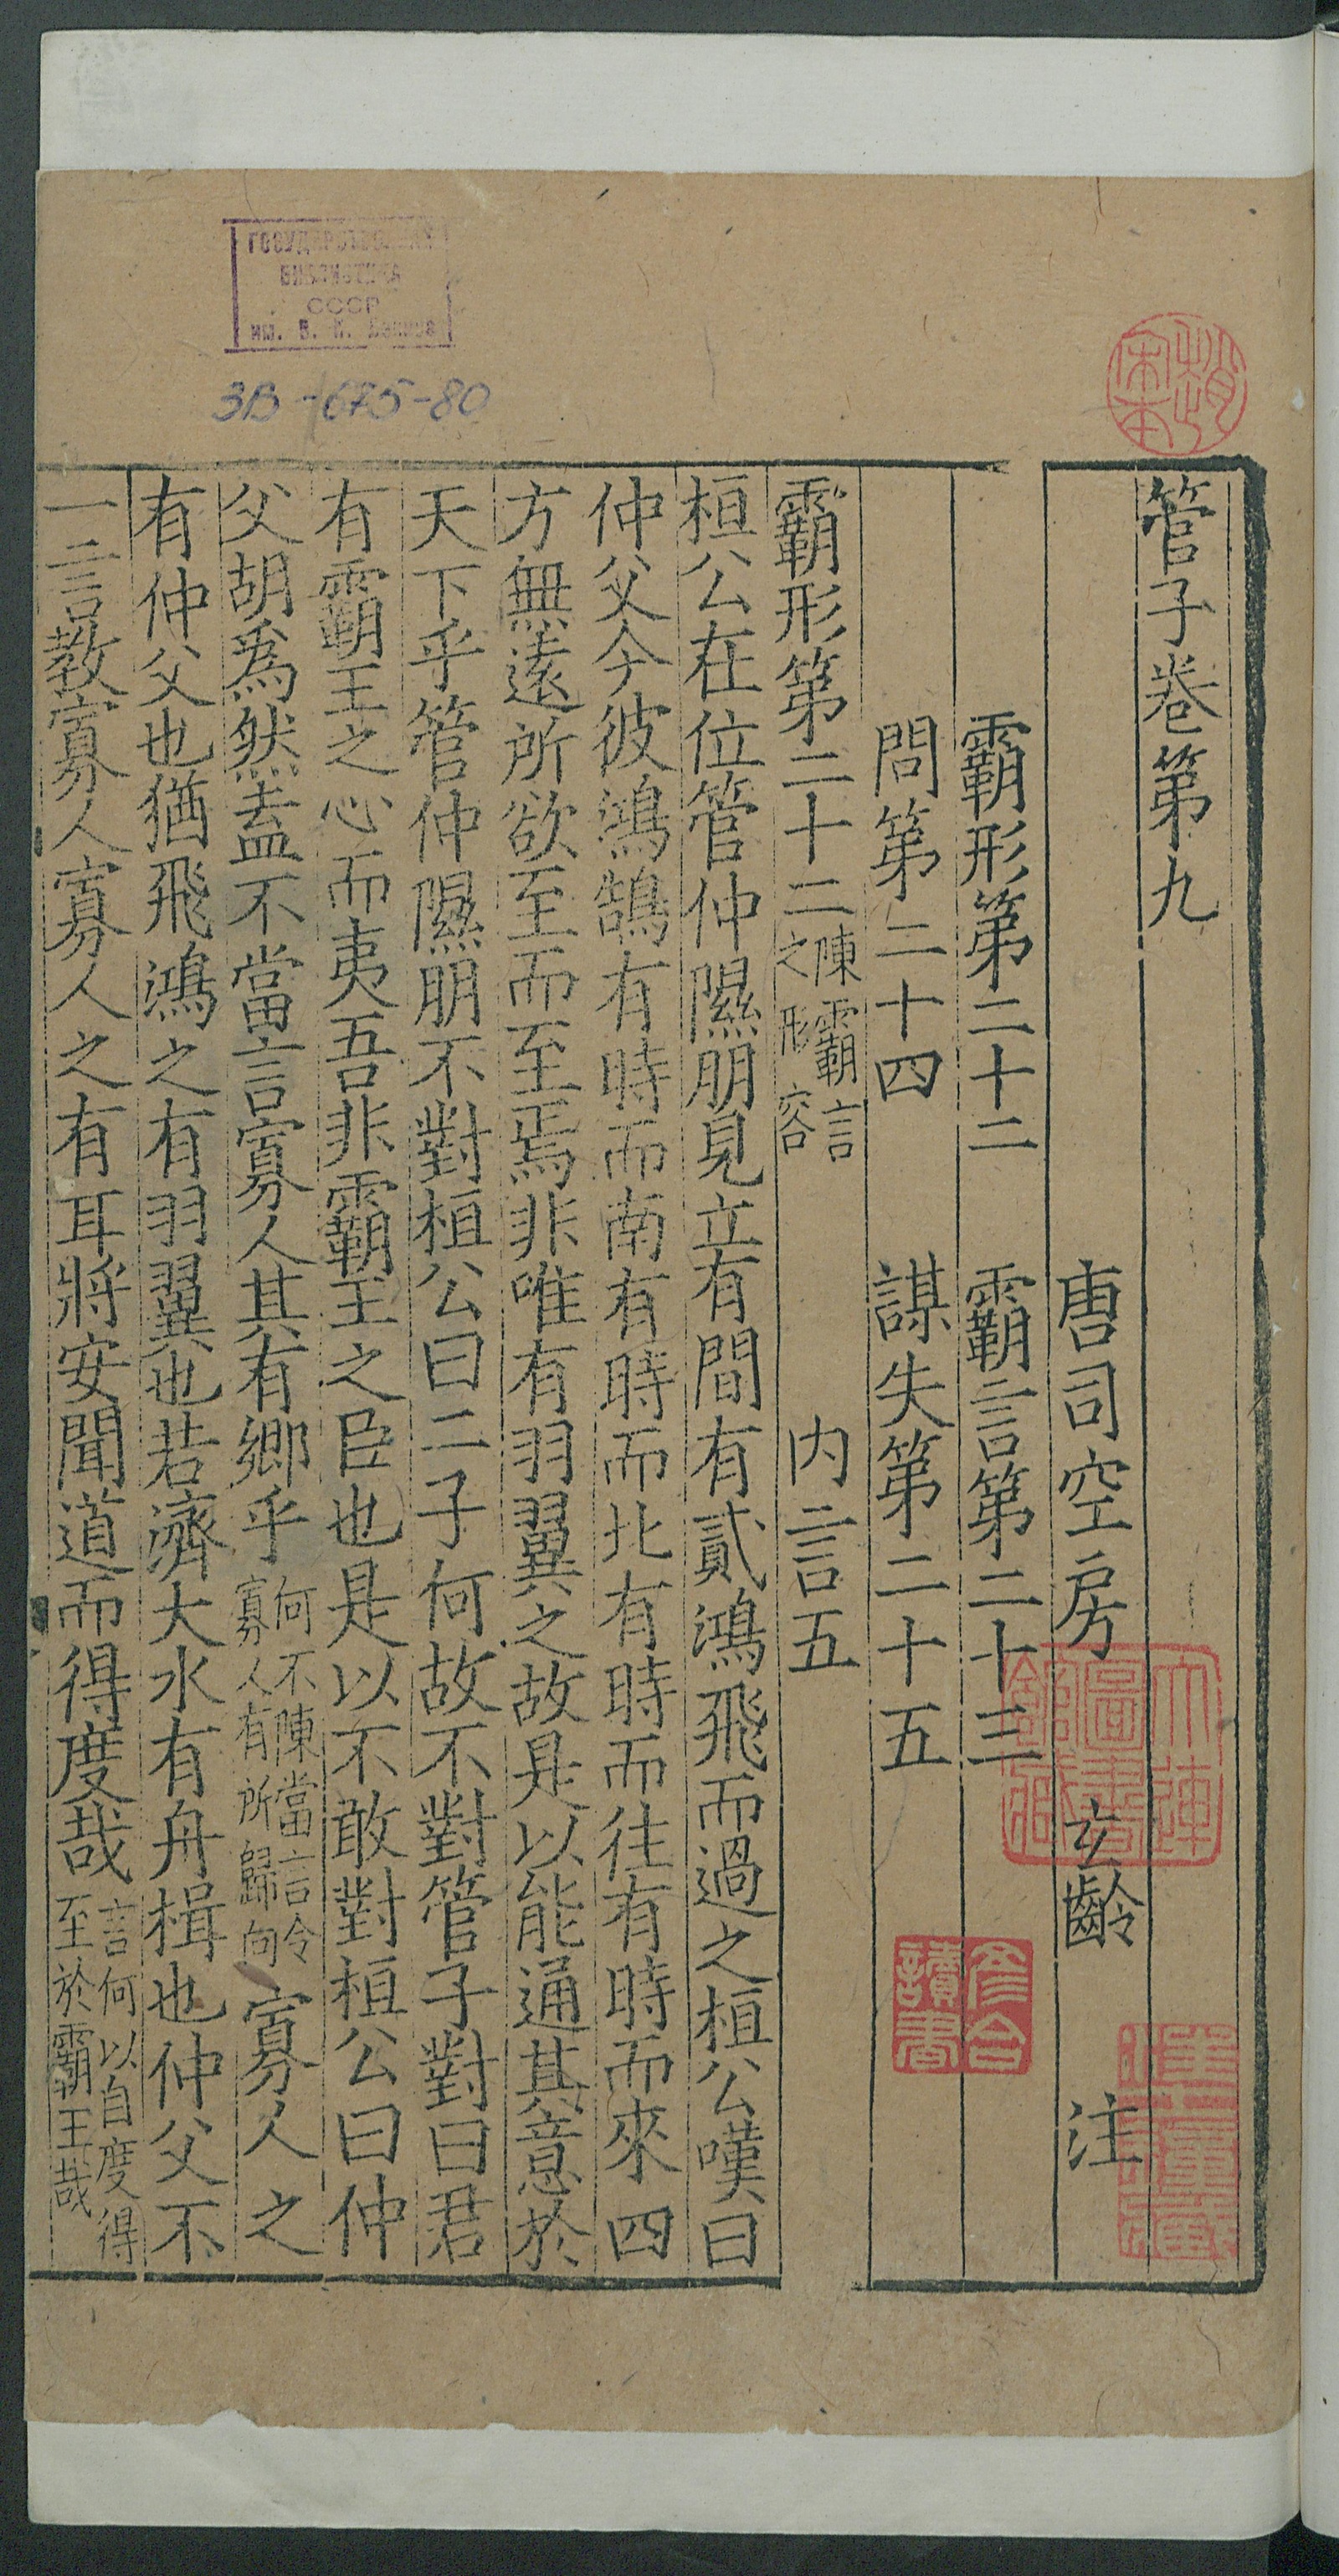 Изображение книги 管子. 注管子. Т. 4 Цзюани 9-10